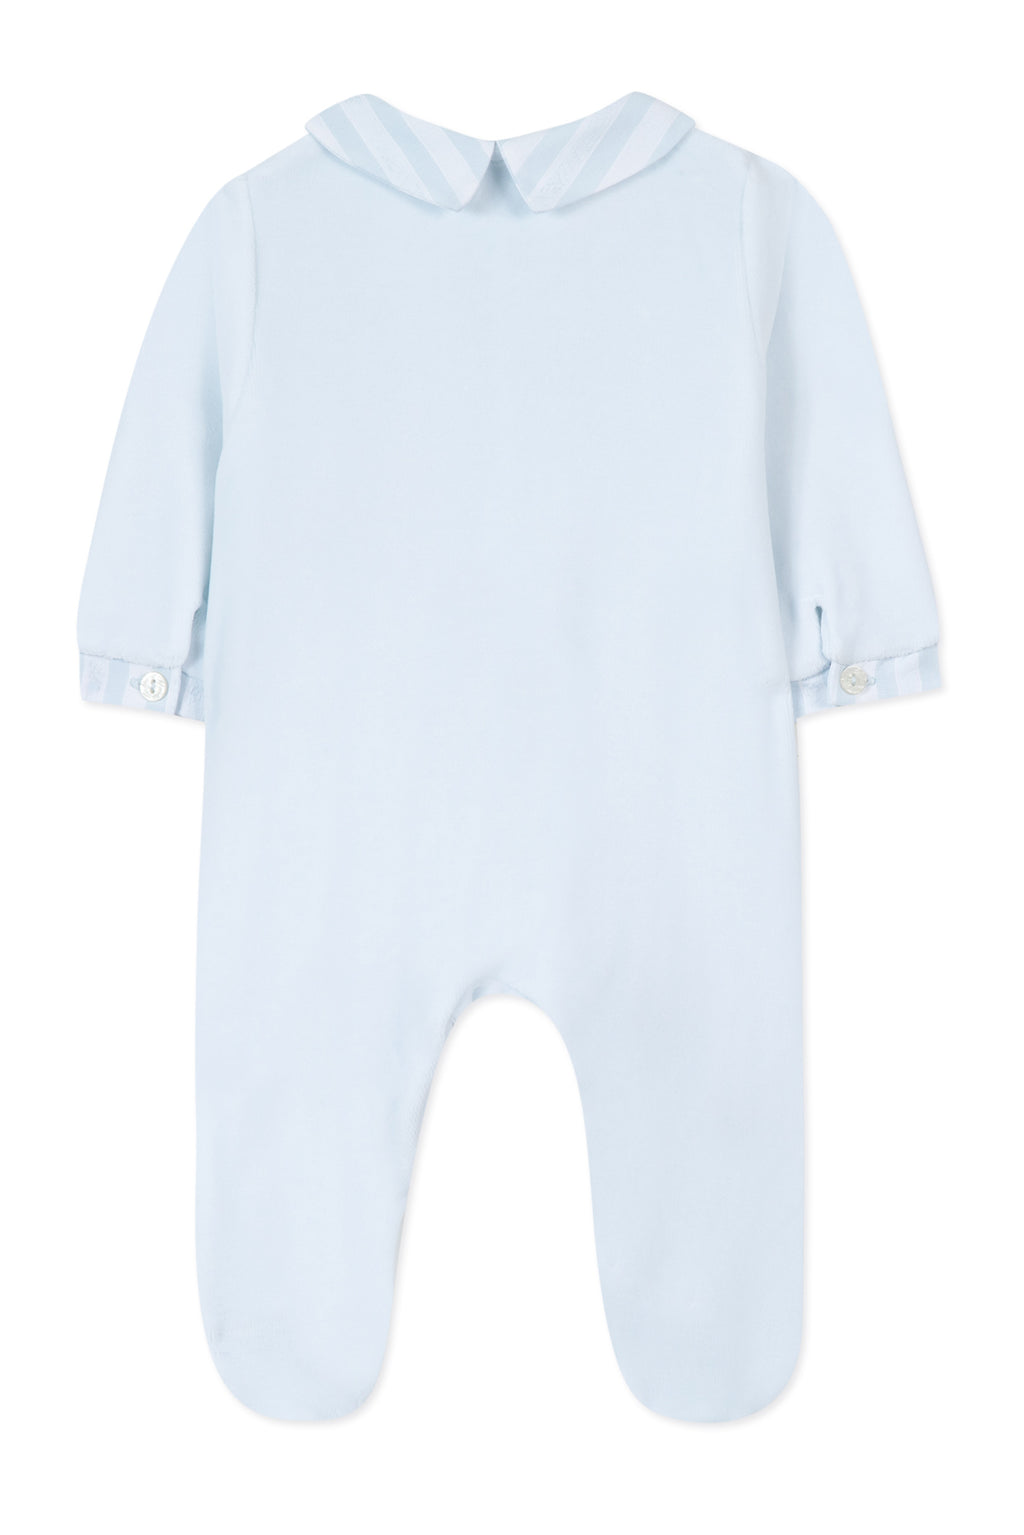 Pijama - Azul cielo Terciopelo Ilustración sueño